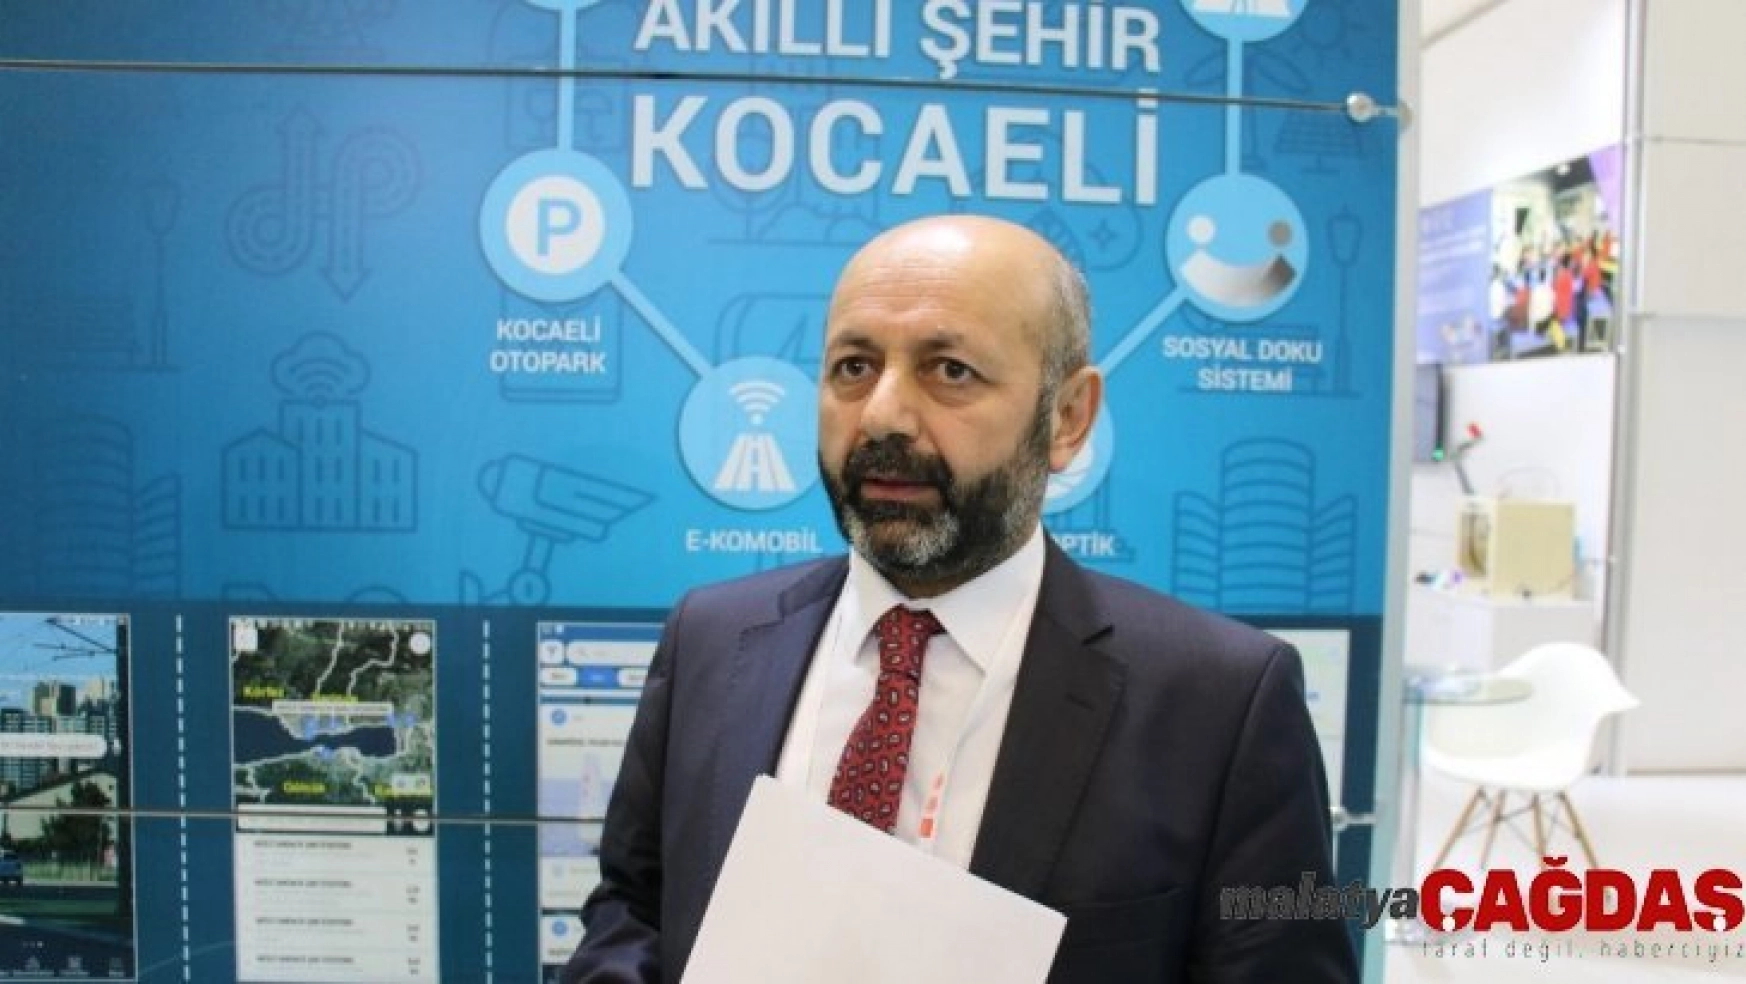 Kocaeli'nden Ankara'ya 'Akıllı Şehir' çıkarması